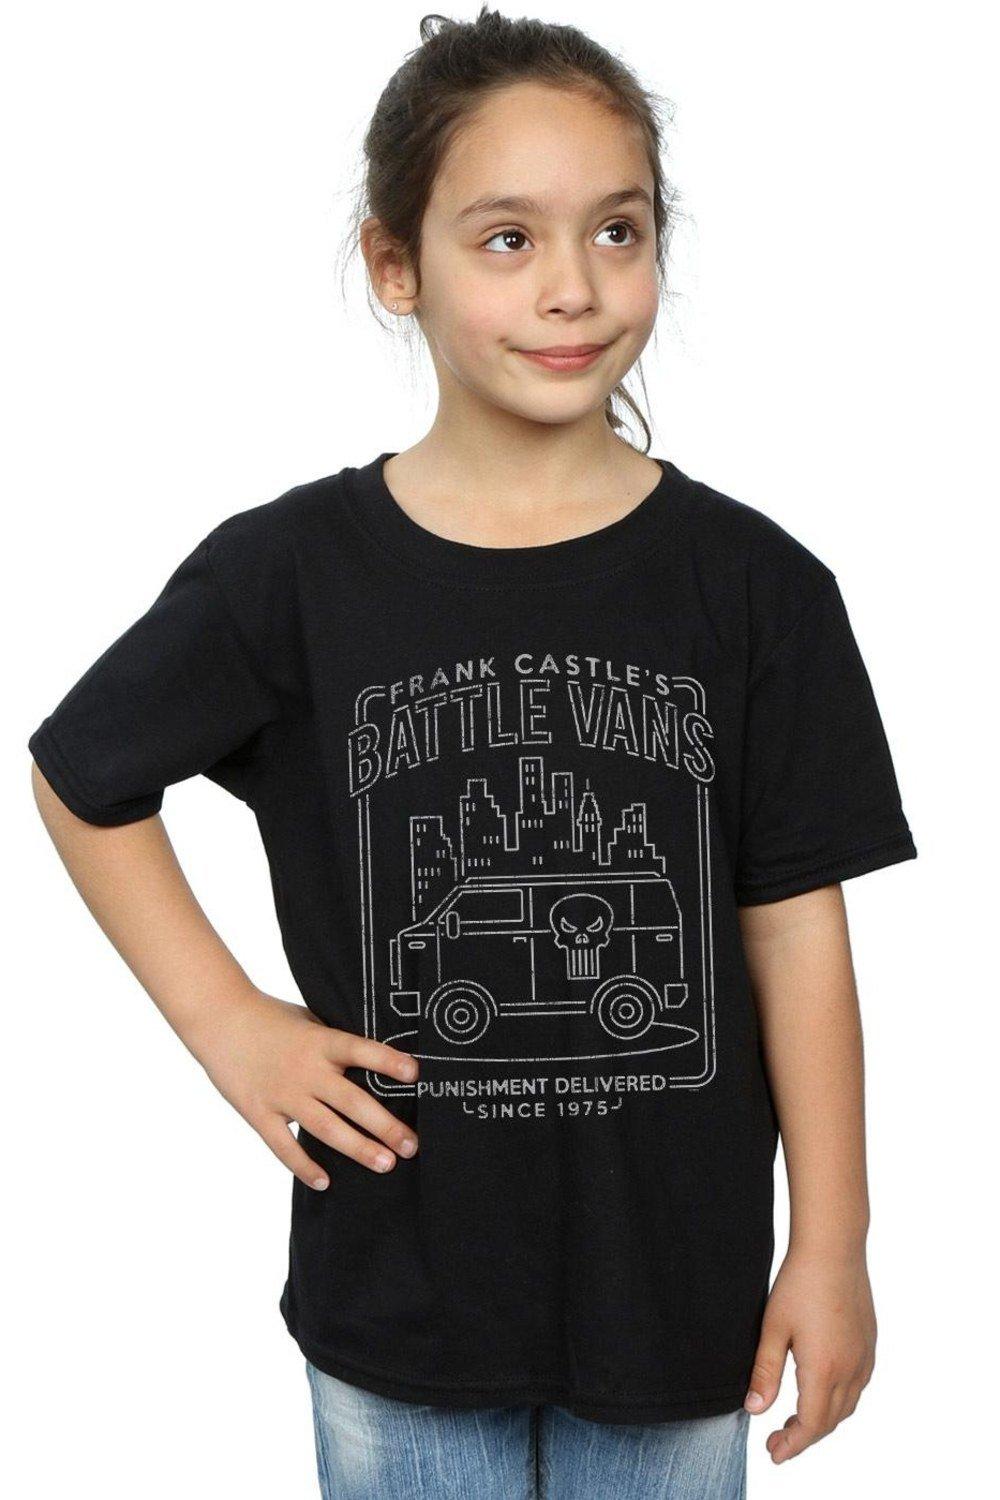 The Punisher Frank Castle’s Battle Vans Cotton T-Shirt